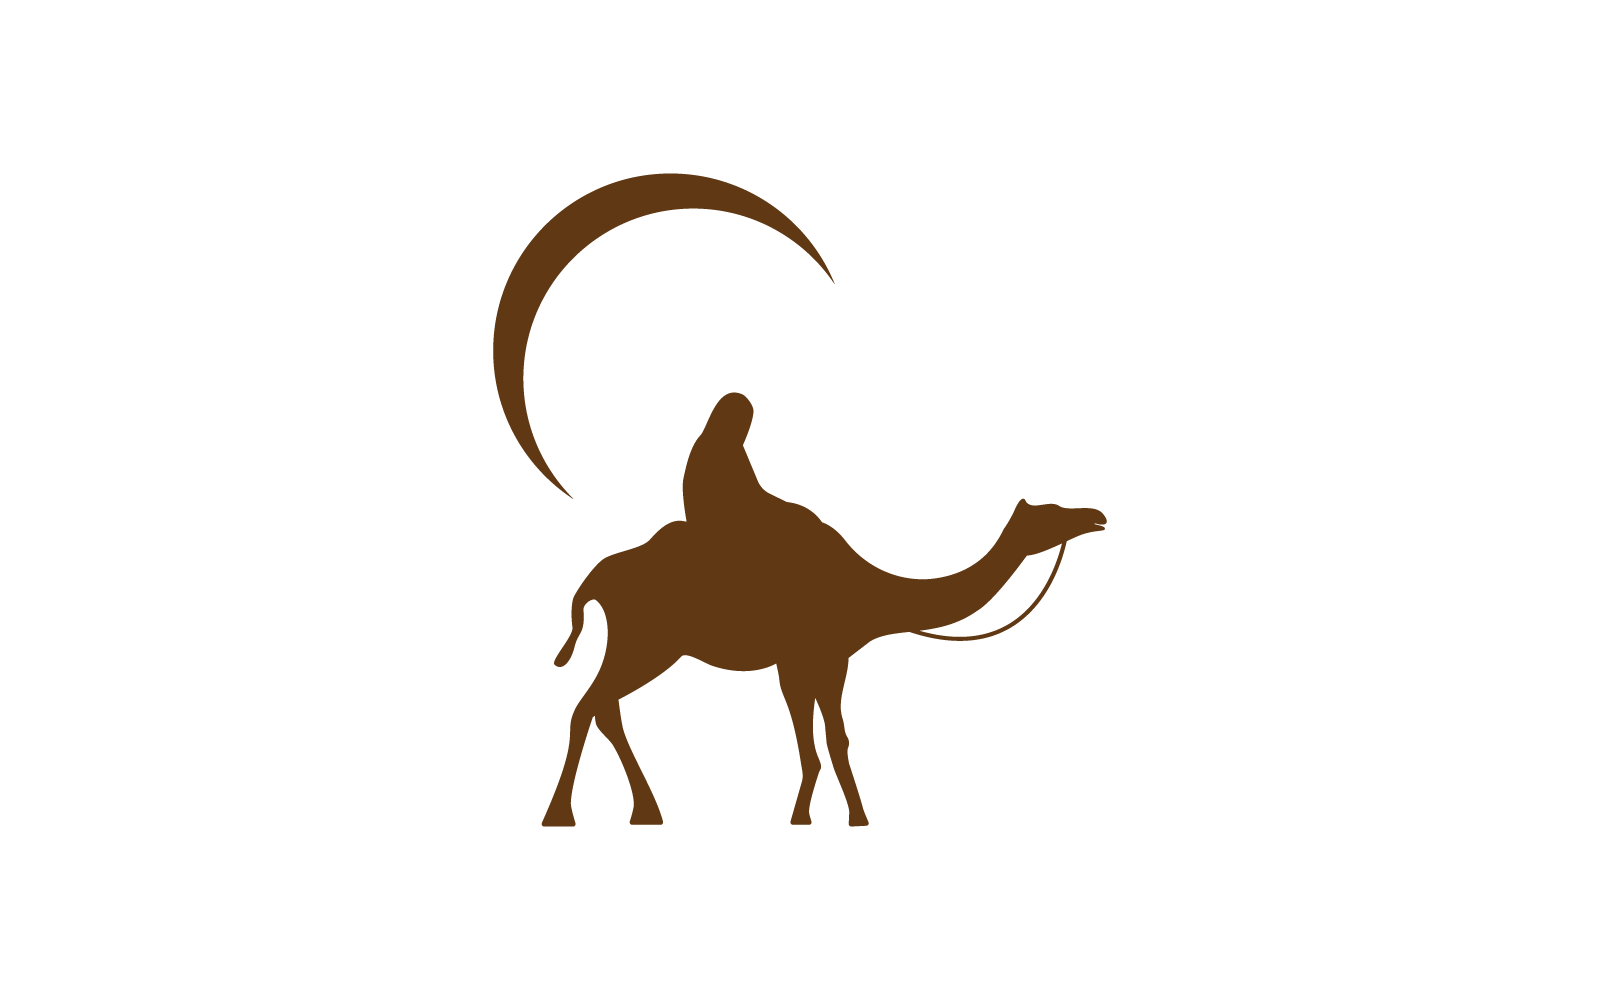 Camel logo icon vector flat design